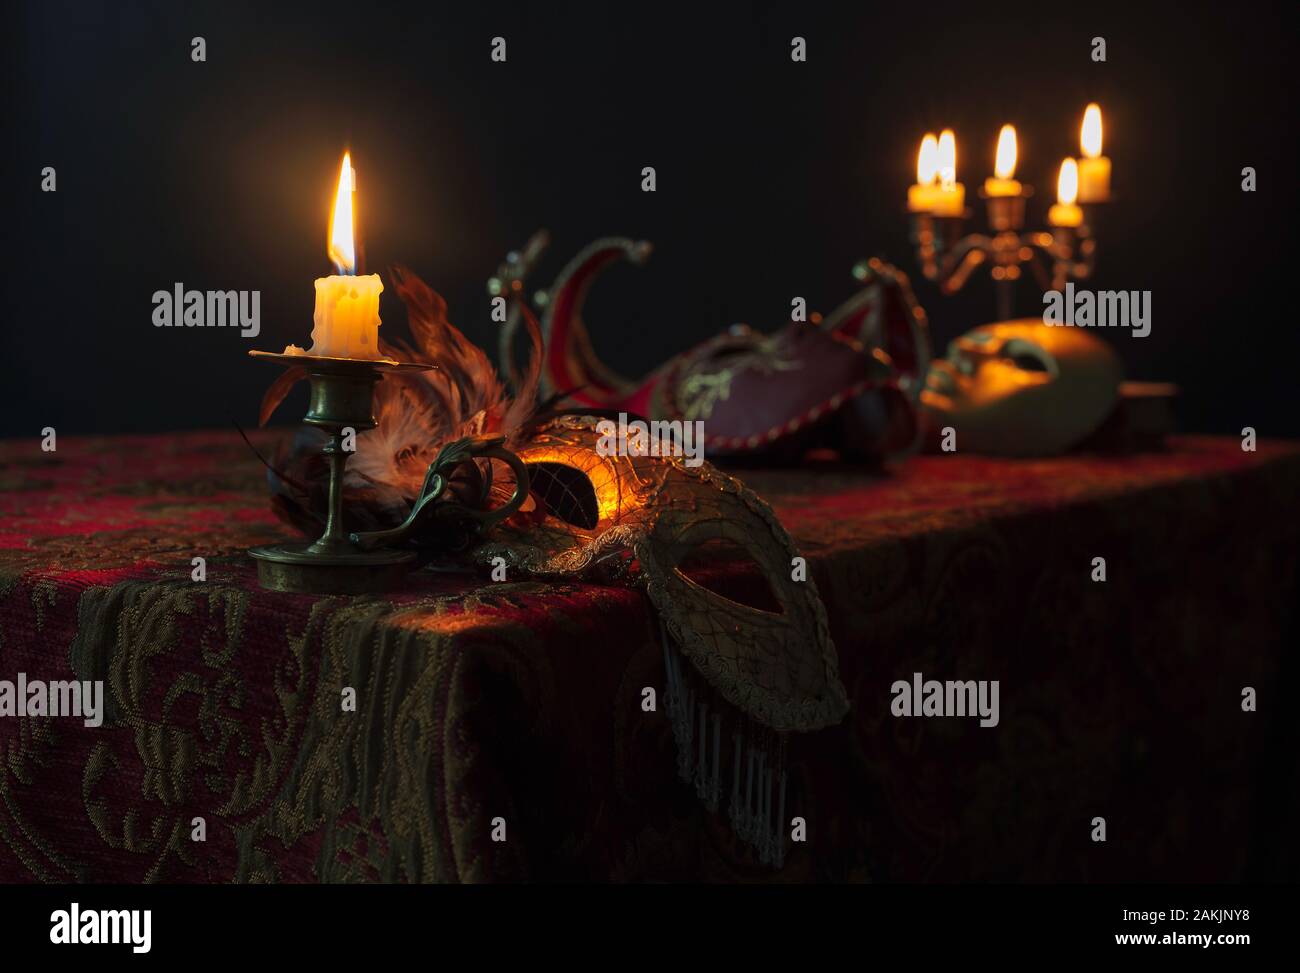 Brennende Kerze in kleinen Messing Leuchter und alten Karneval Masken auf einem dunklen Hintergrund, selektive konzentrieren. Stockfoto